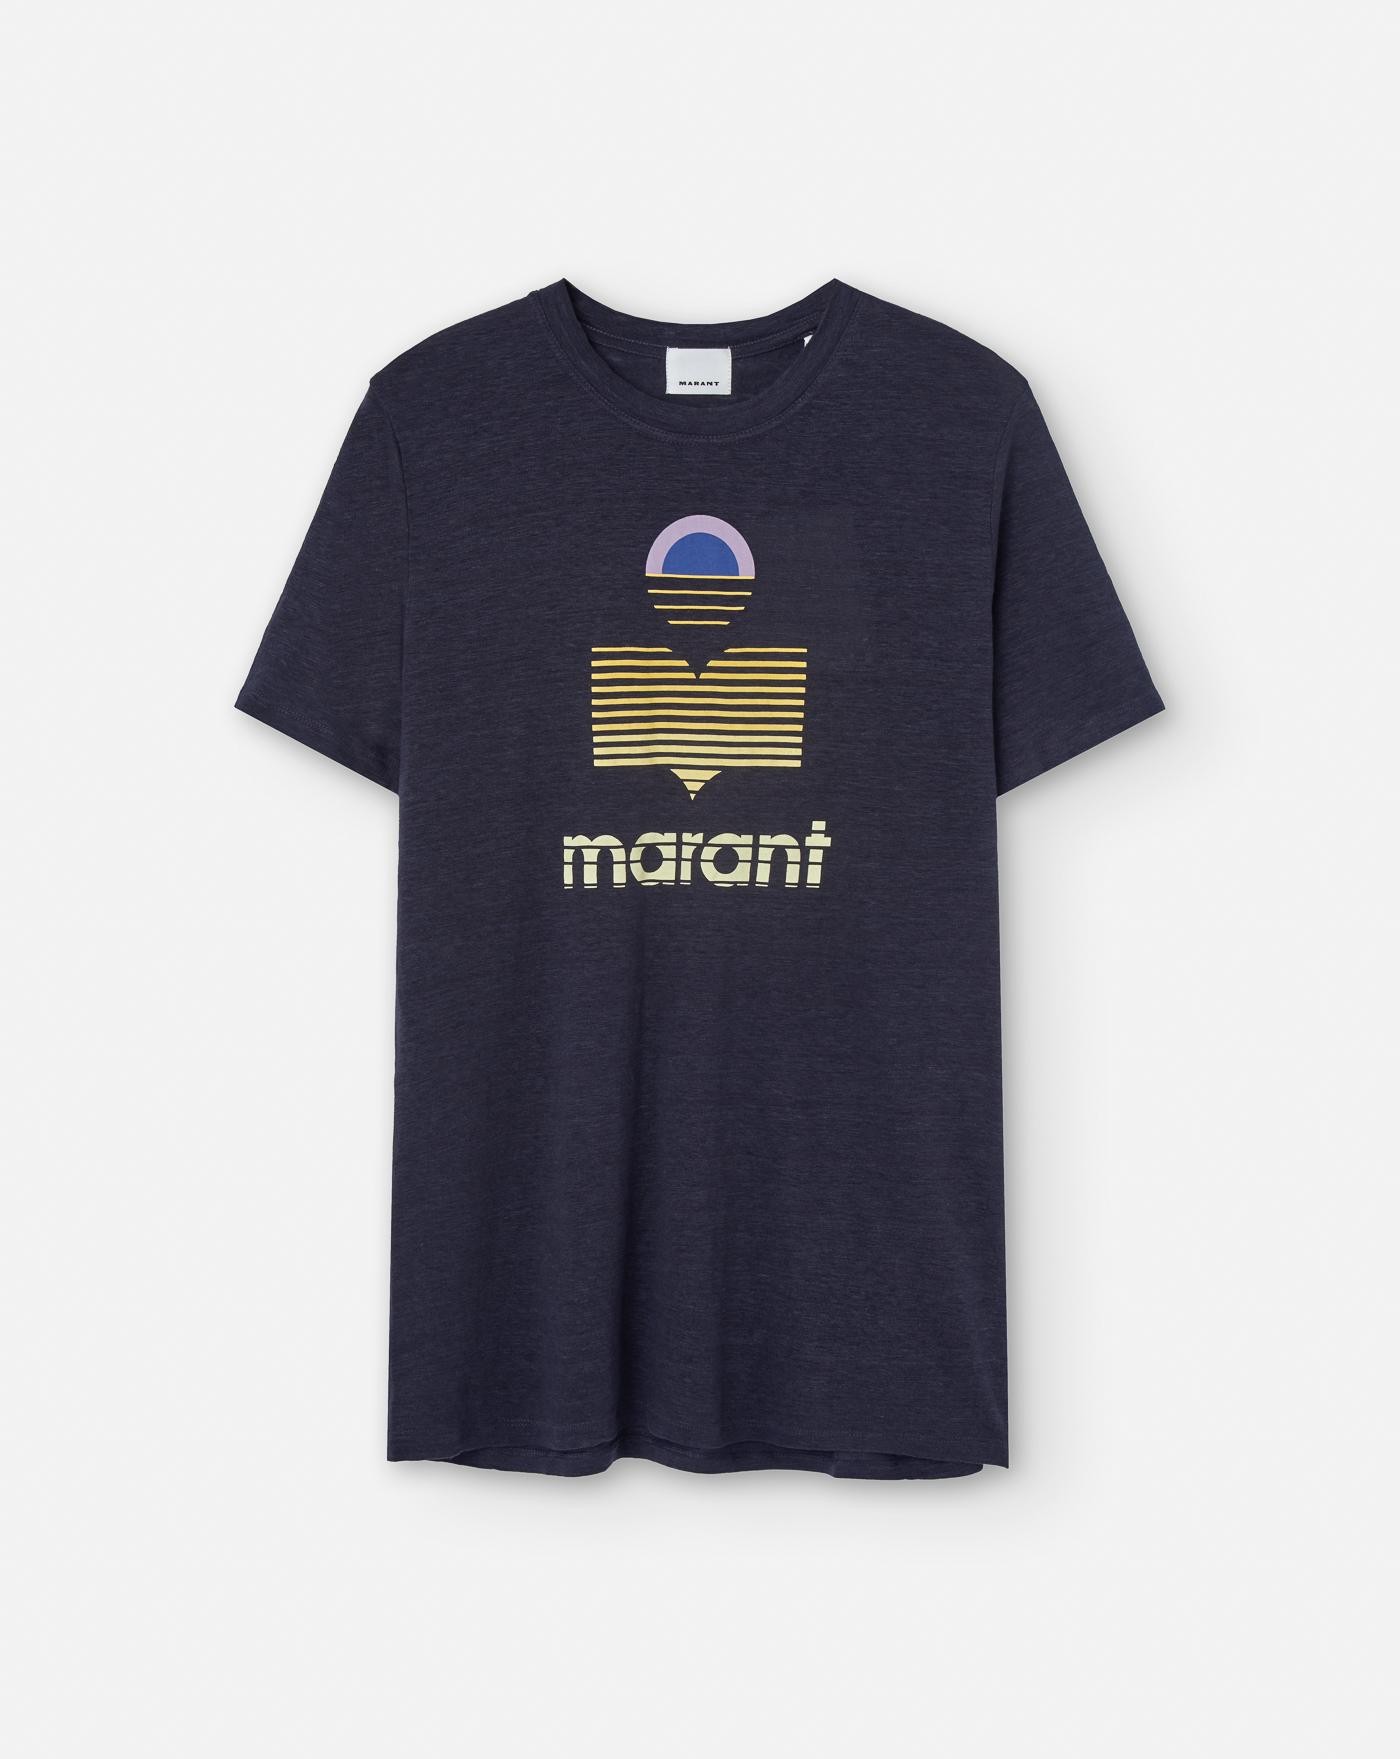 Camiseta Marant Karman